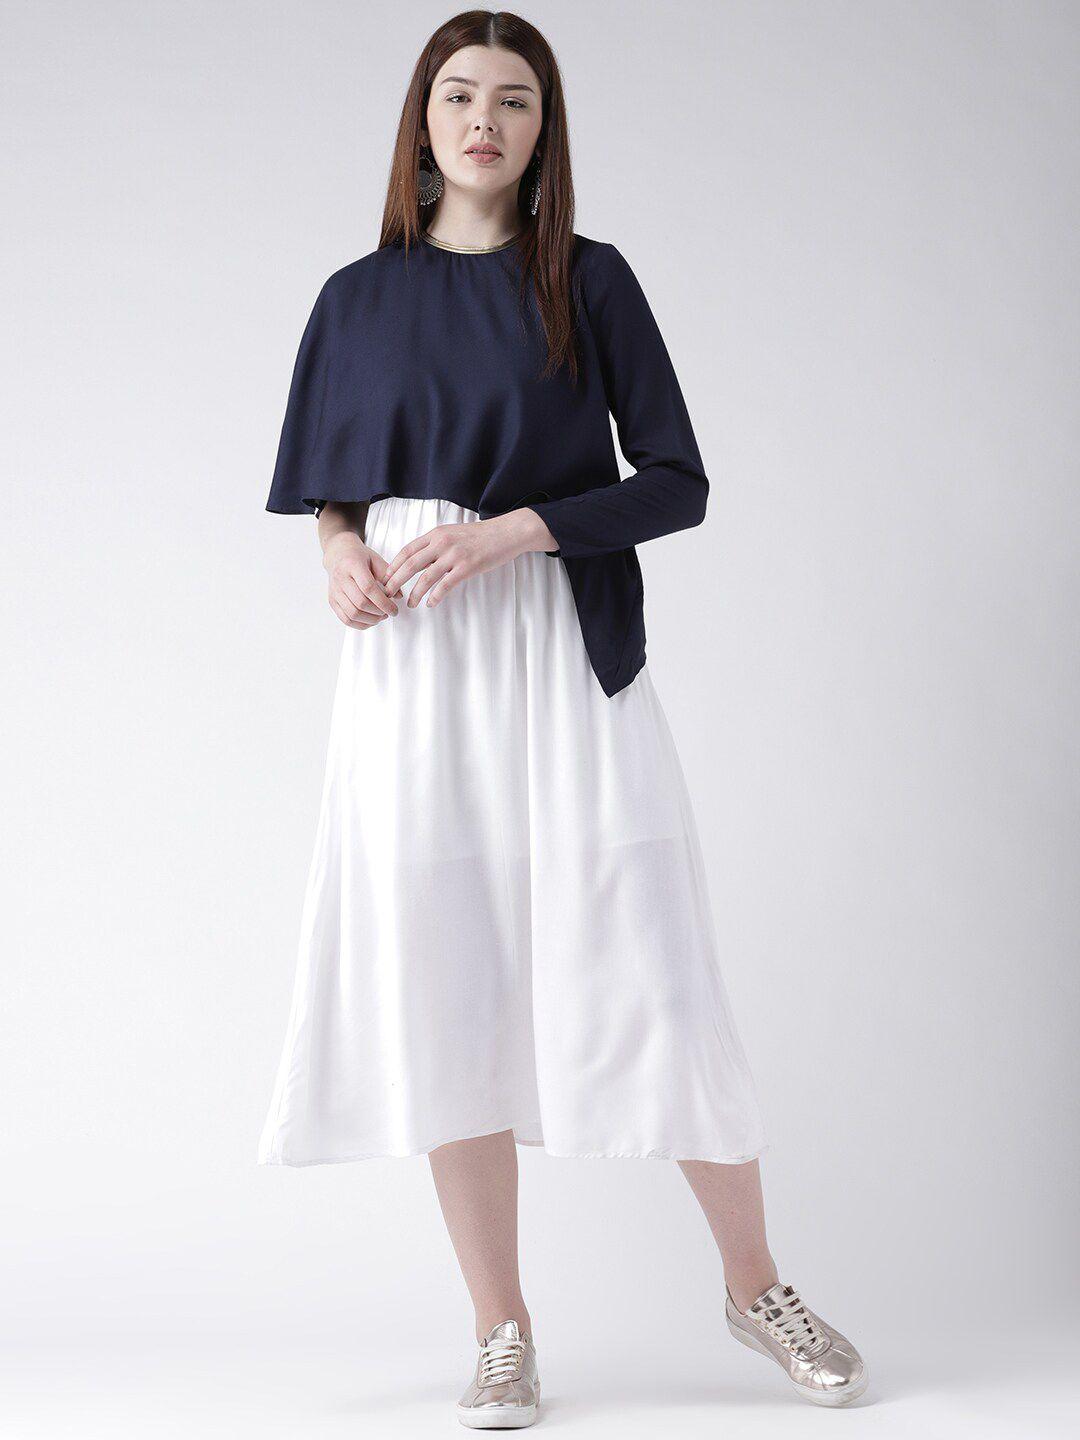 dodo & moa navy blue & white colourblocked crepe a-line midi dress